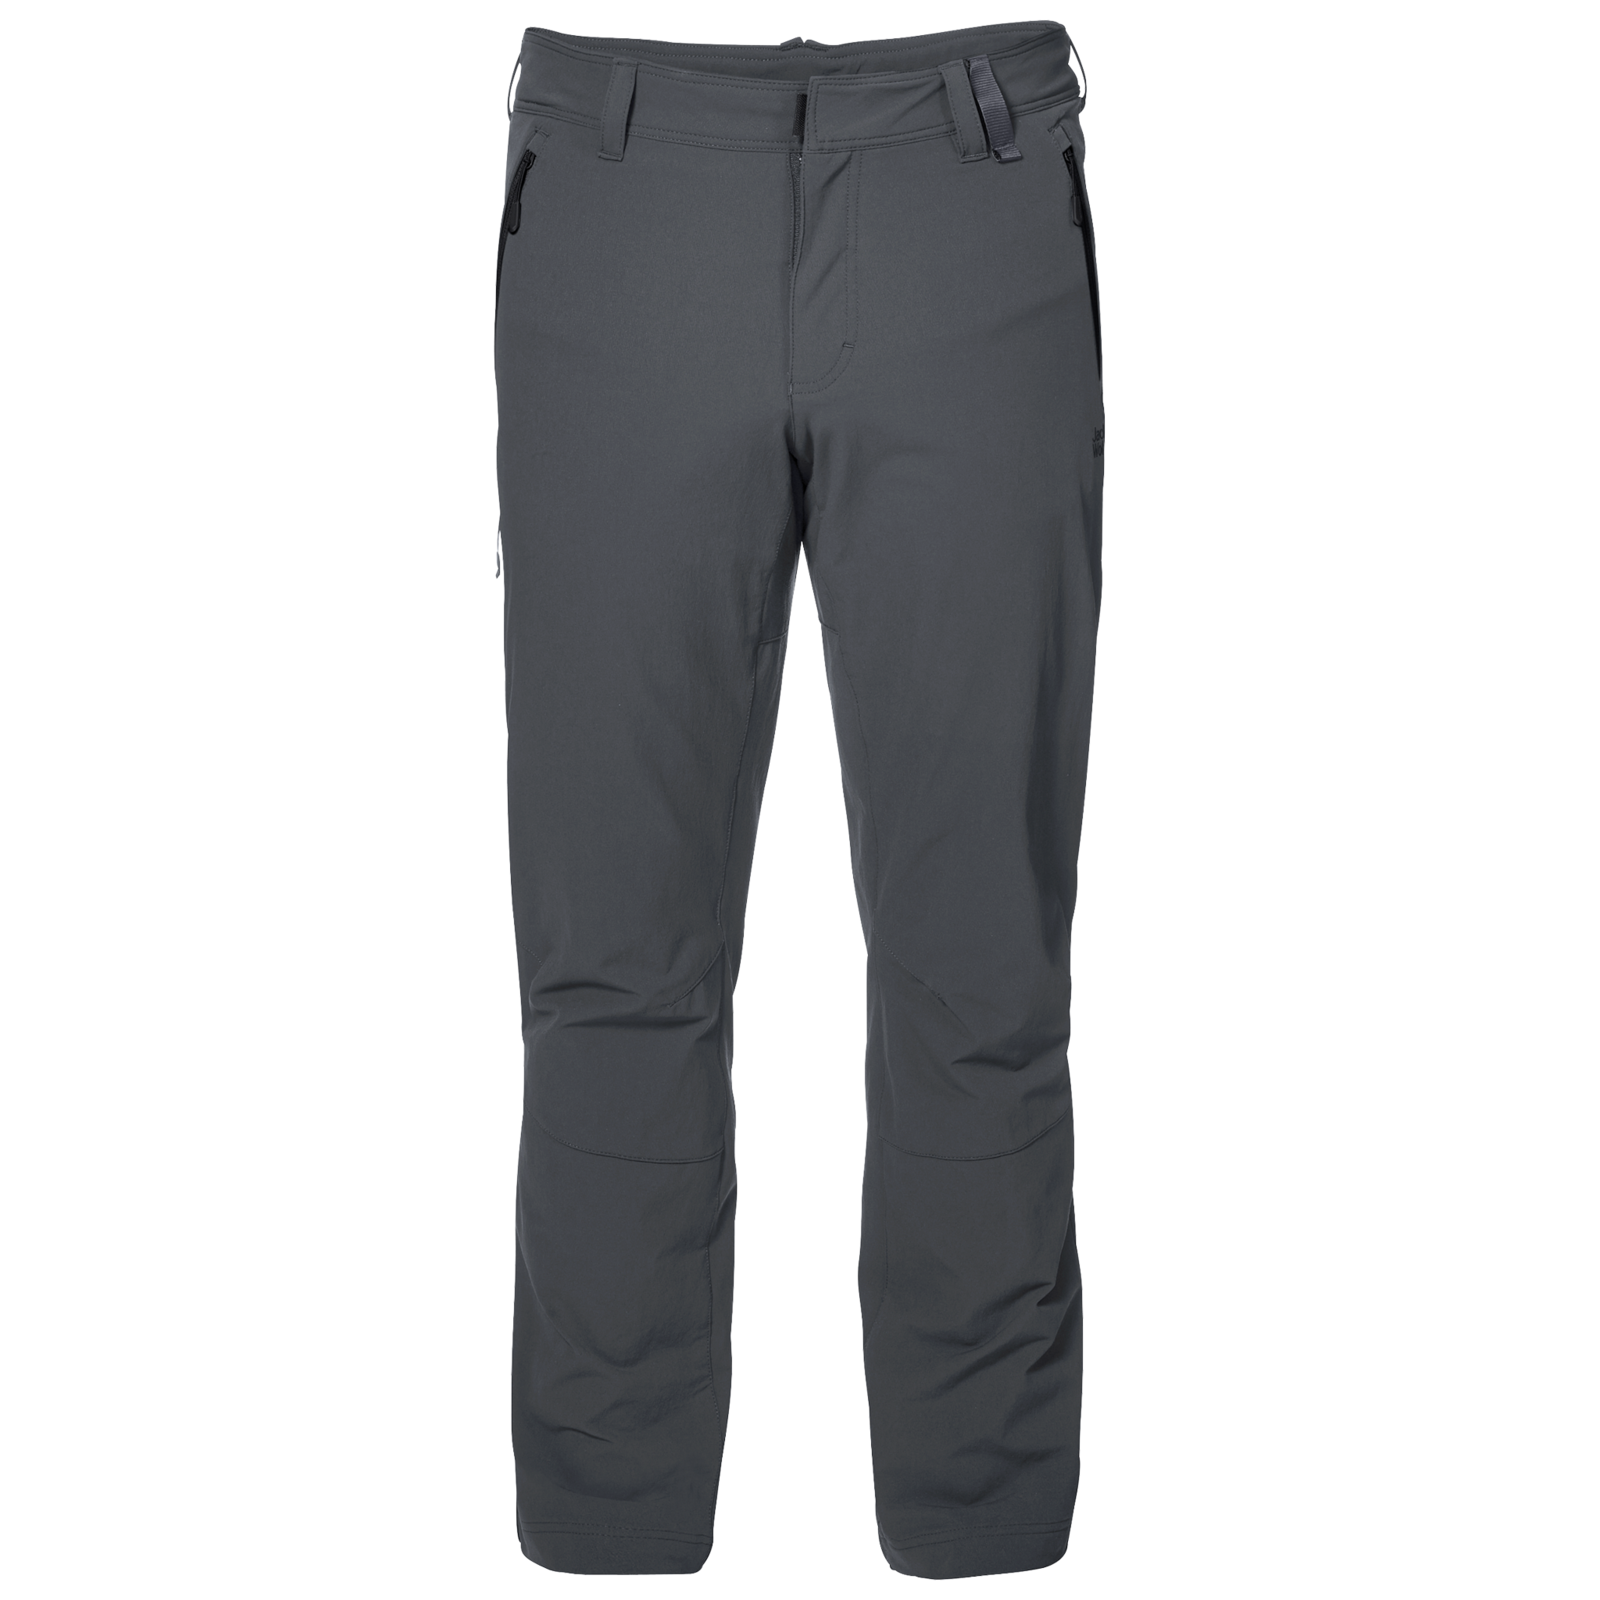 Tegenover Stof De eigenaar Jack Wolfskin Men's Activate XT Pants Winter Outdoor Trousers Hiking | eBay